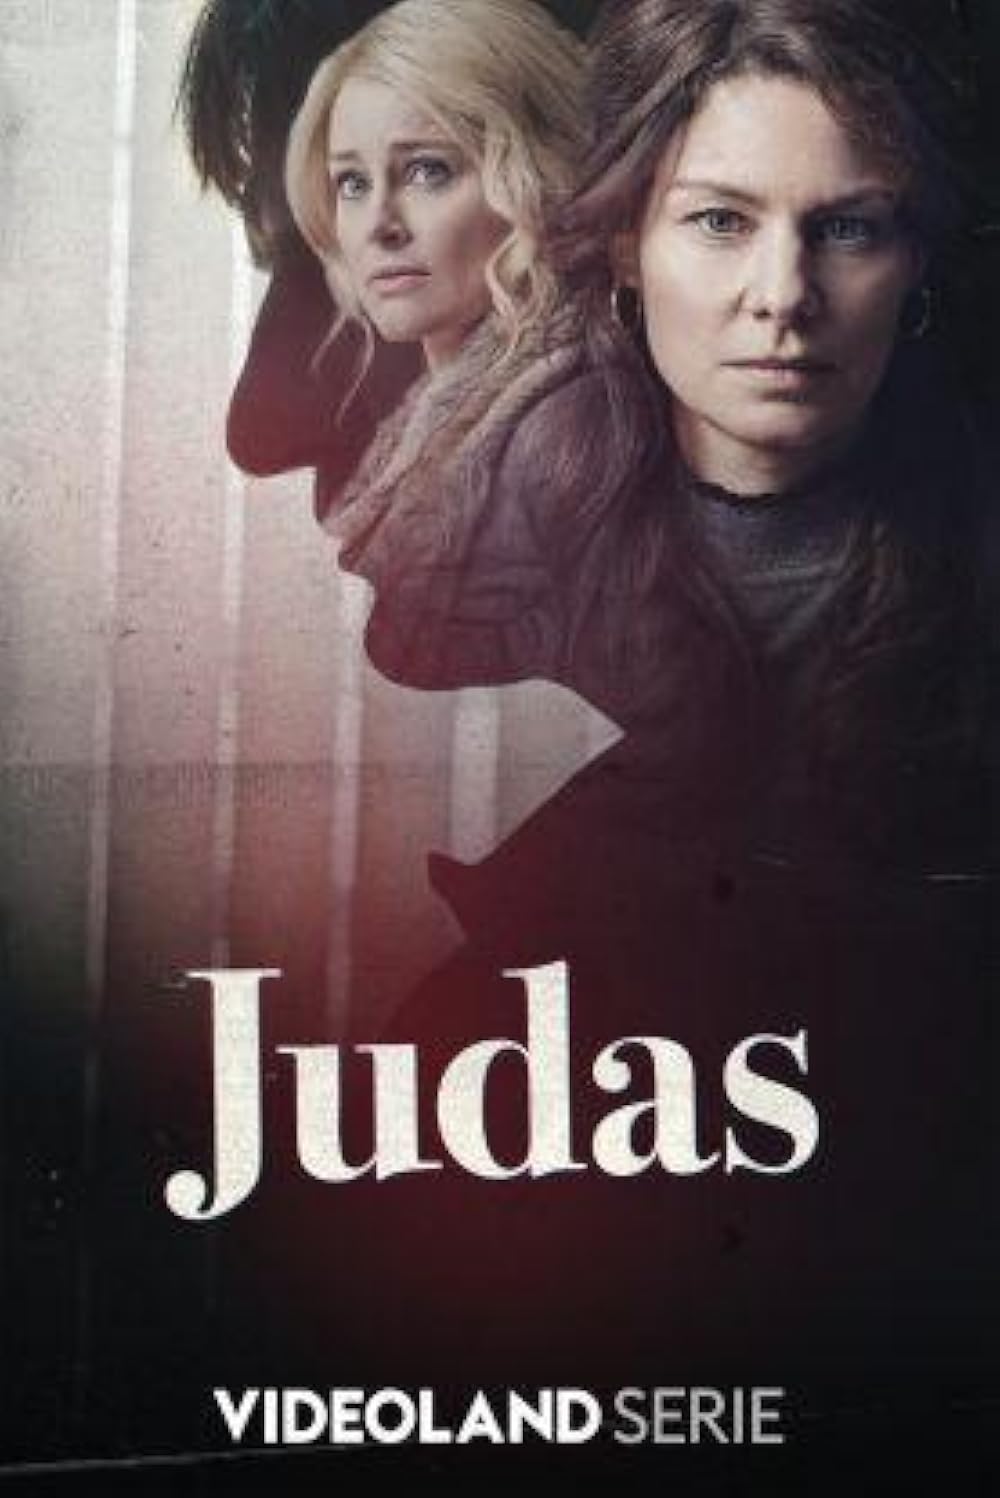 Judas (2019)